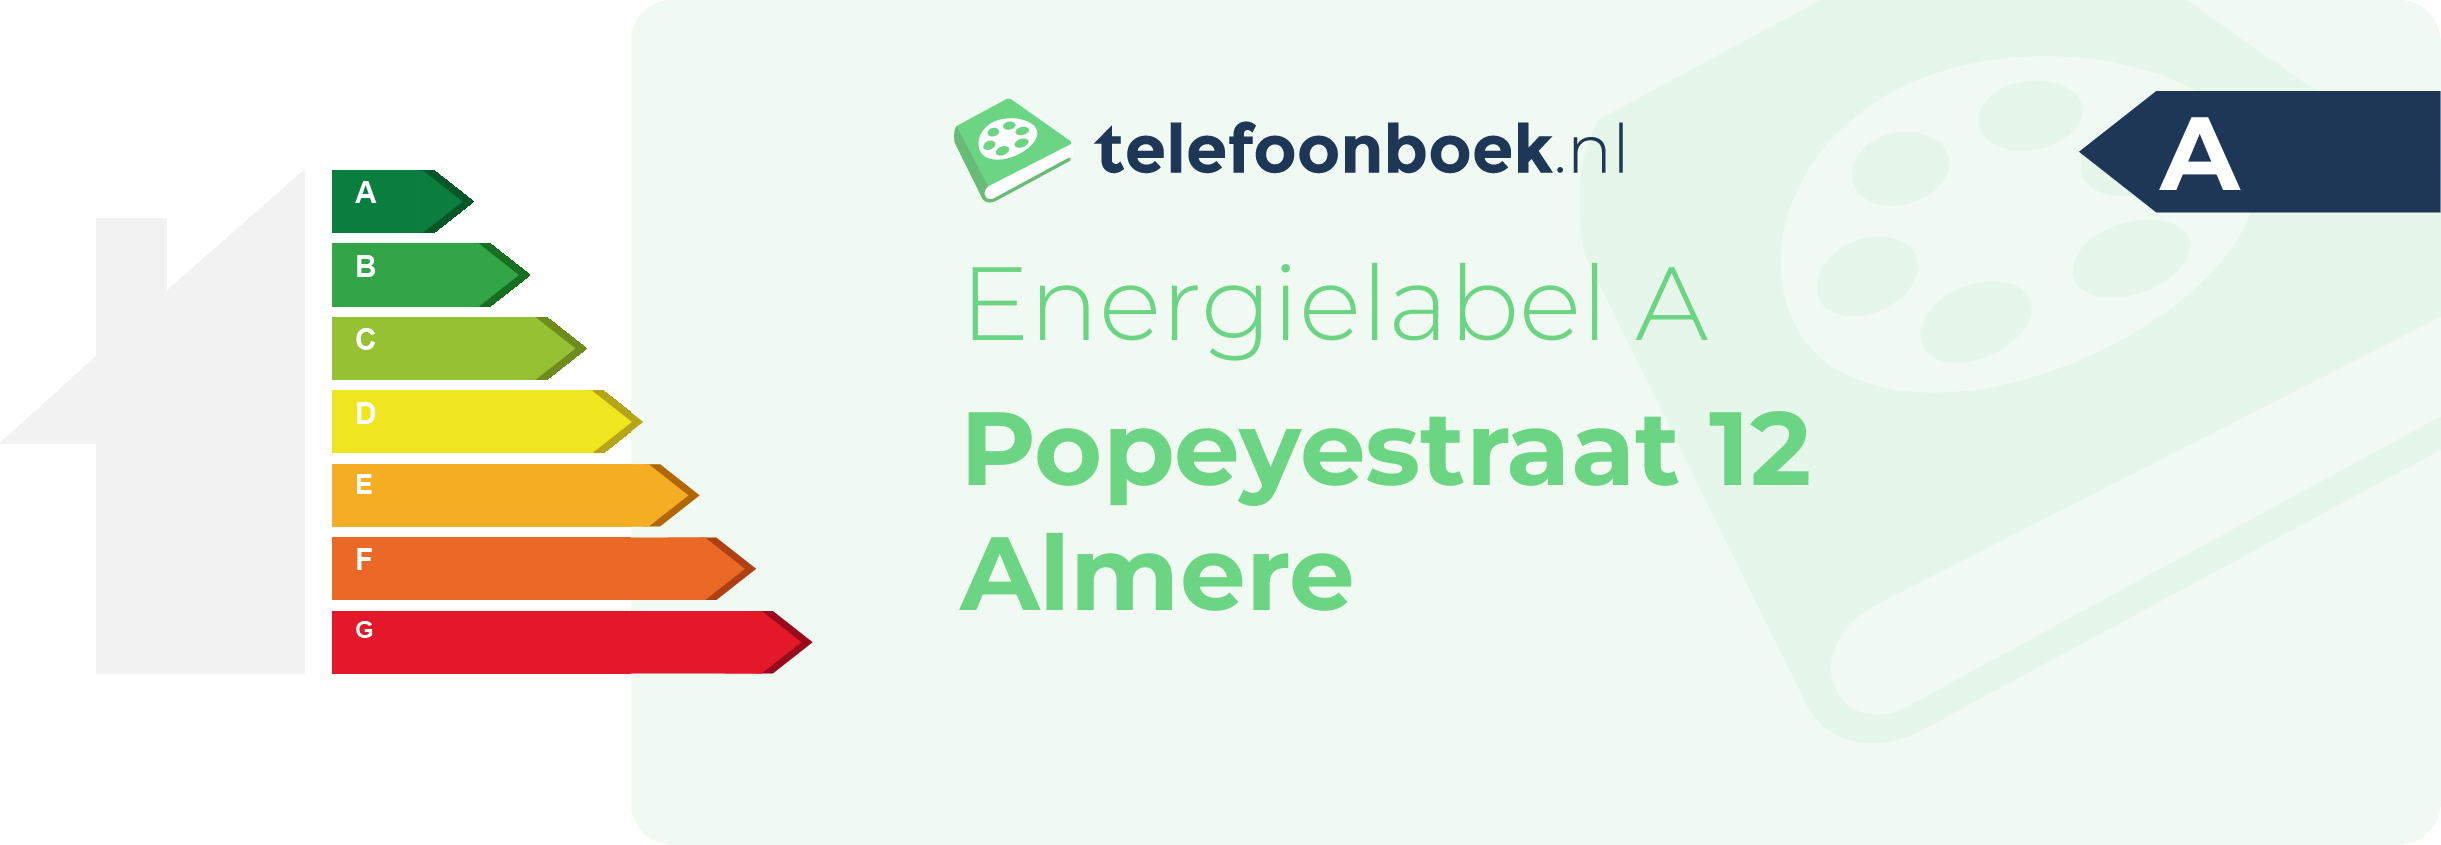 Energielabel Popeyestraat 12 Almere